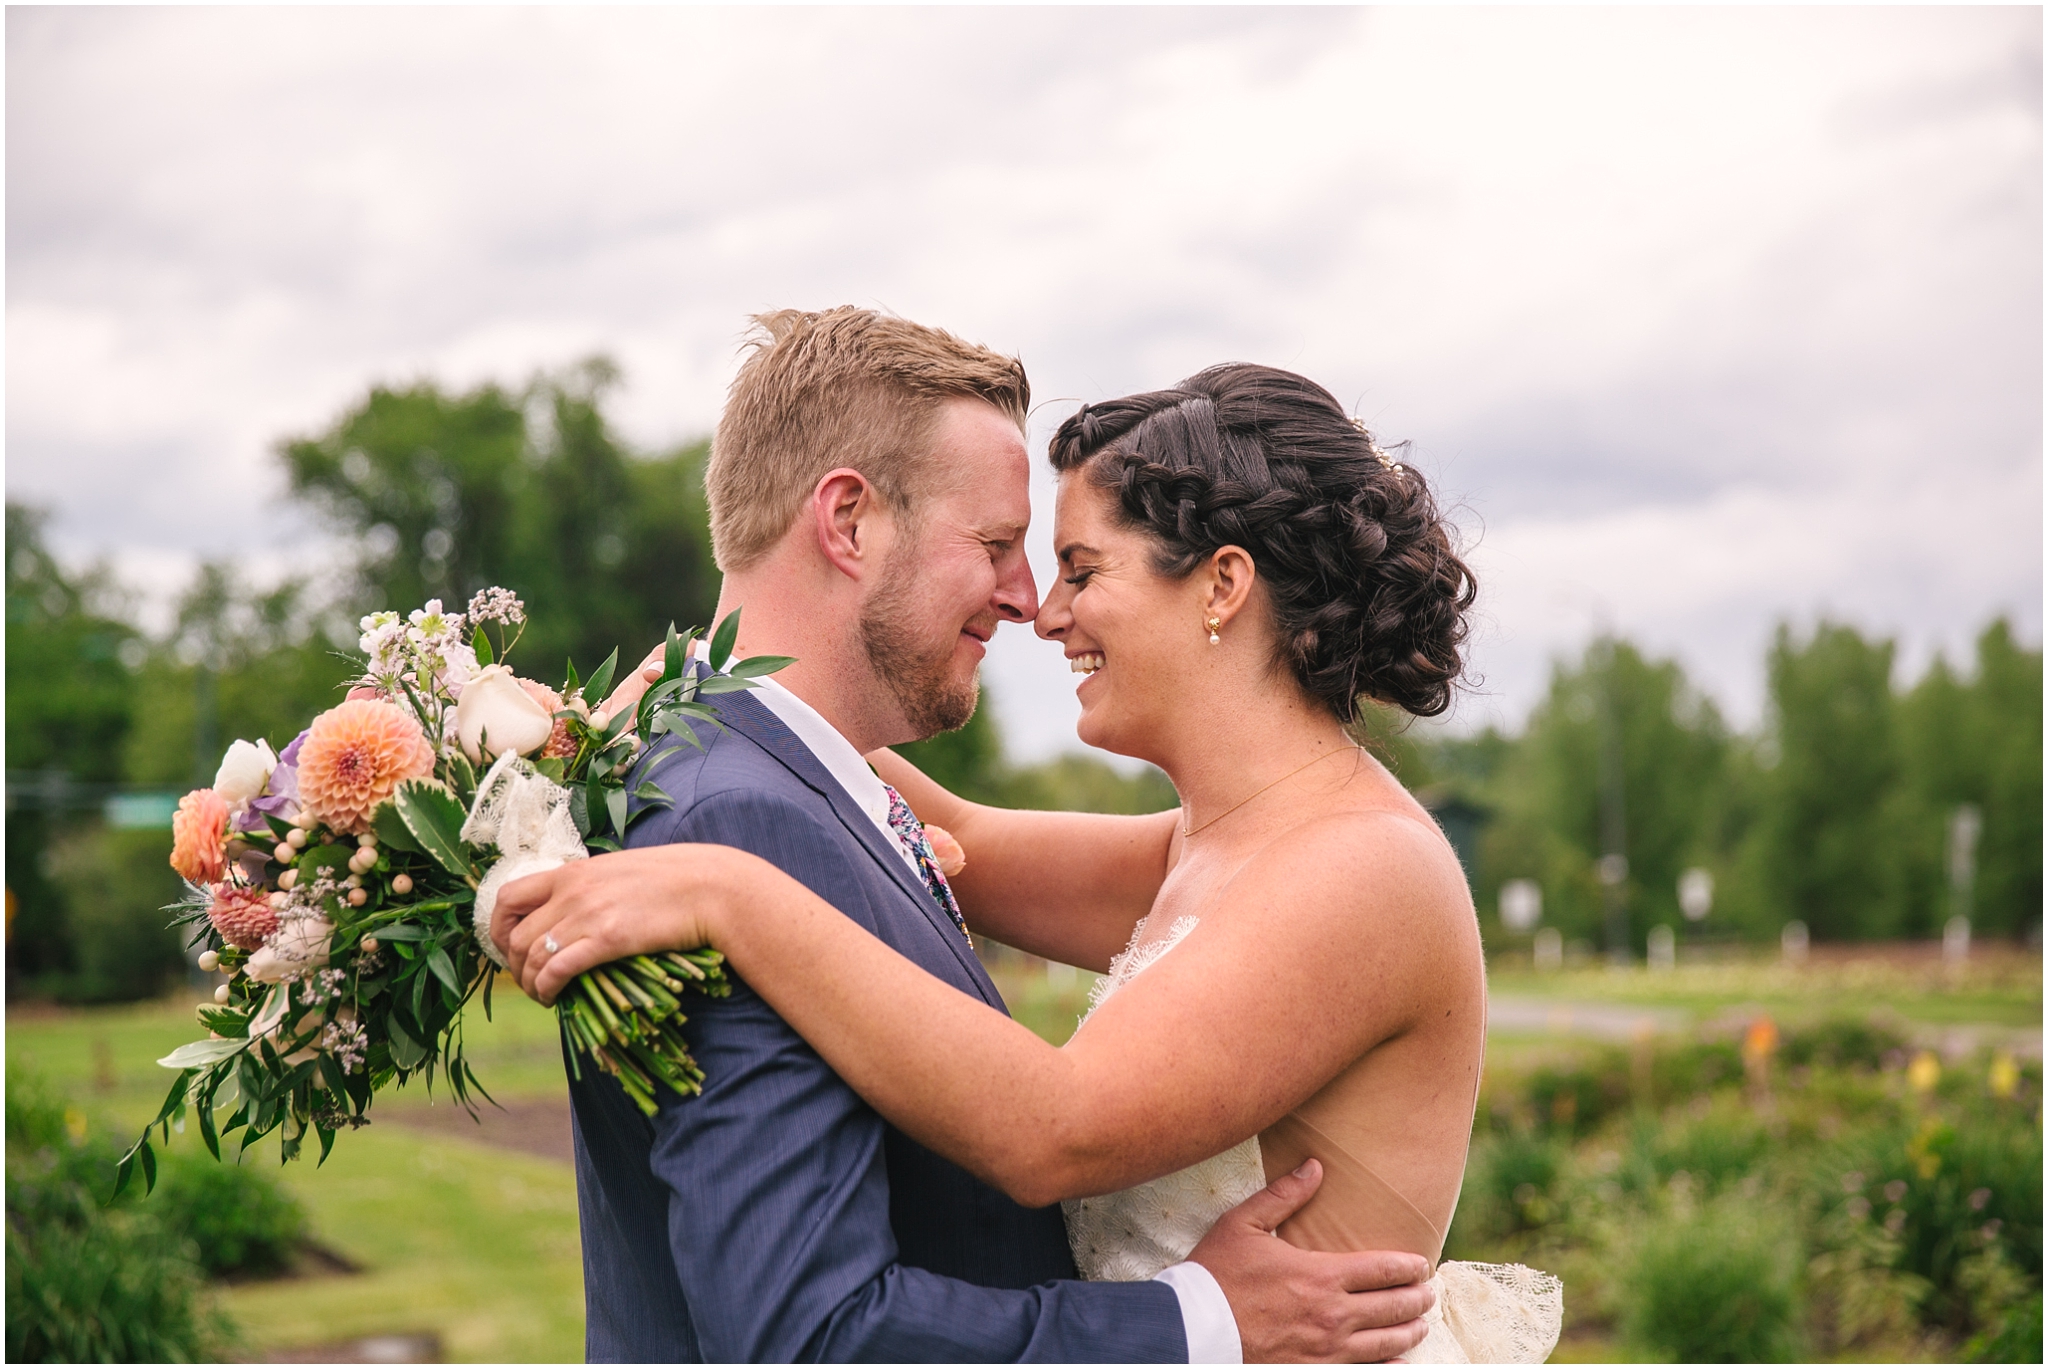 Bride and groom nuzzle each other in Washington Park garden in Denver Colorado